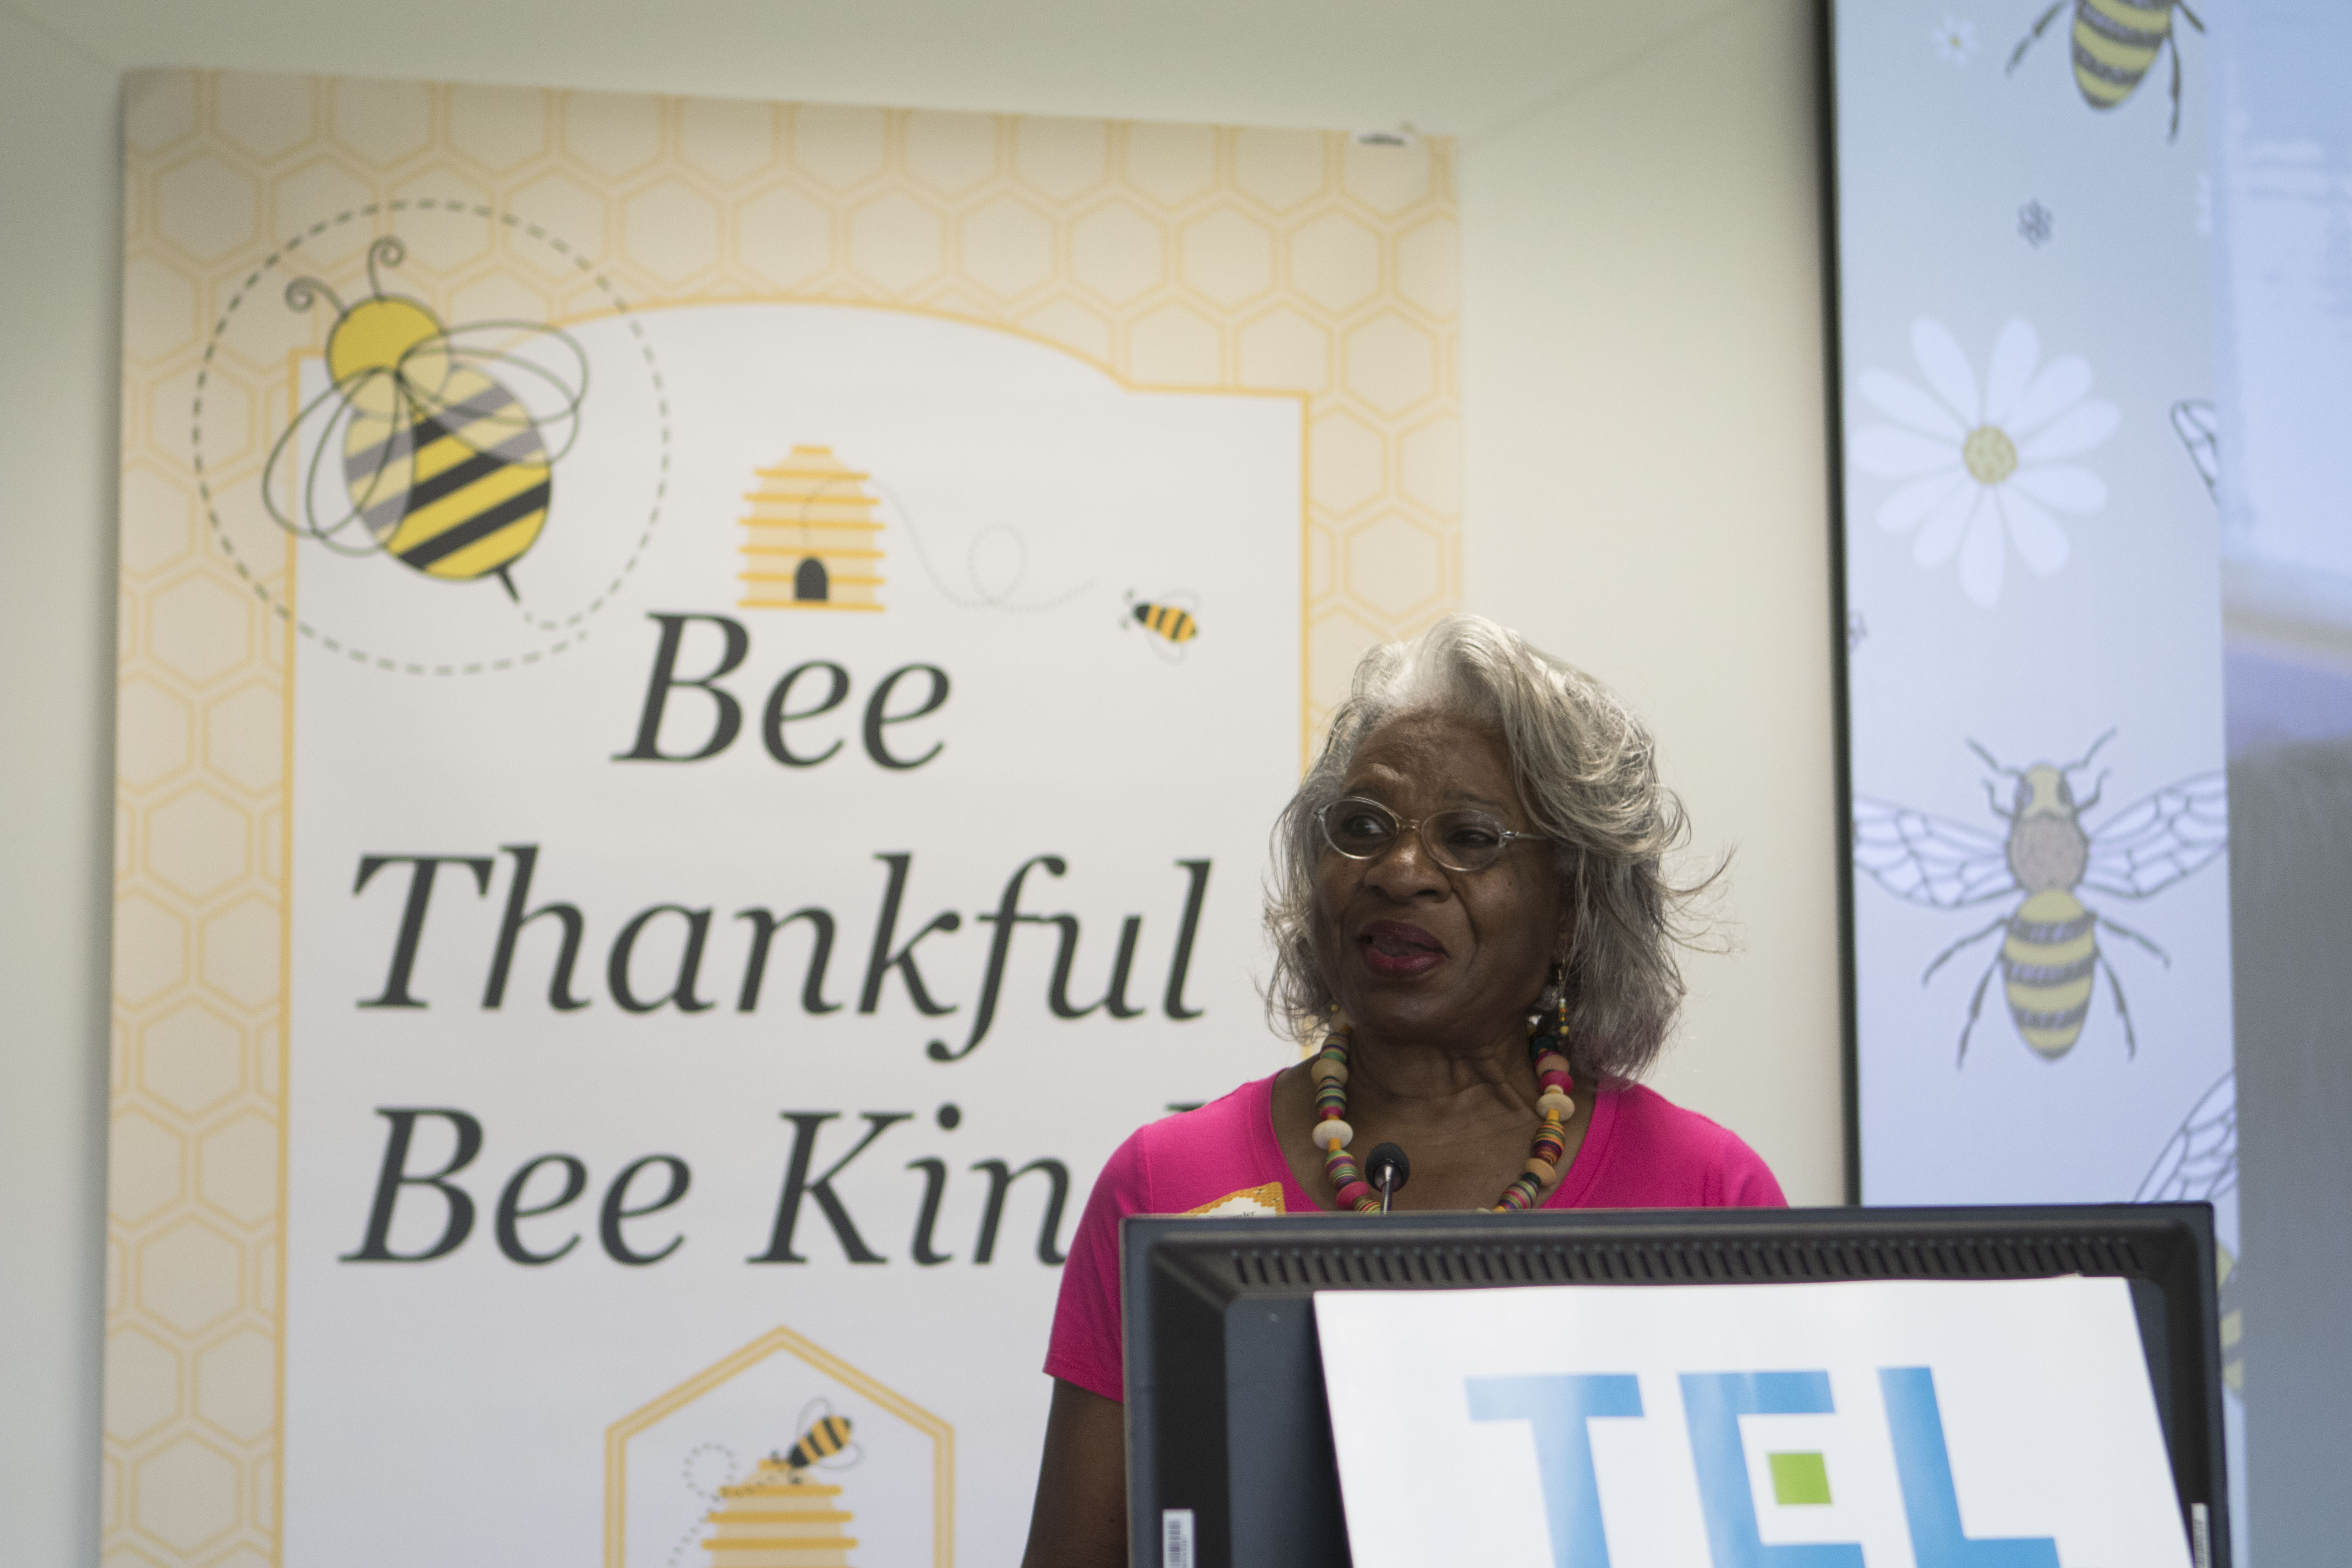 Una persona identificada como mujer se encuentra en un podio pronunciando un discurso. Un cartel detrás de ella dice &quot;Bee Thankful Bee Kind&quot;.